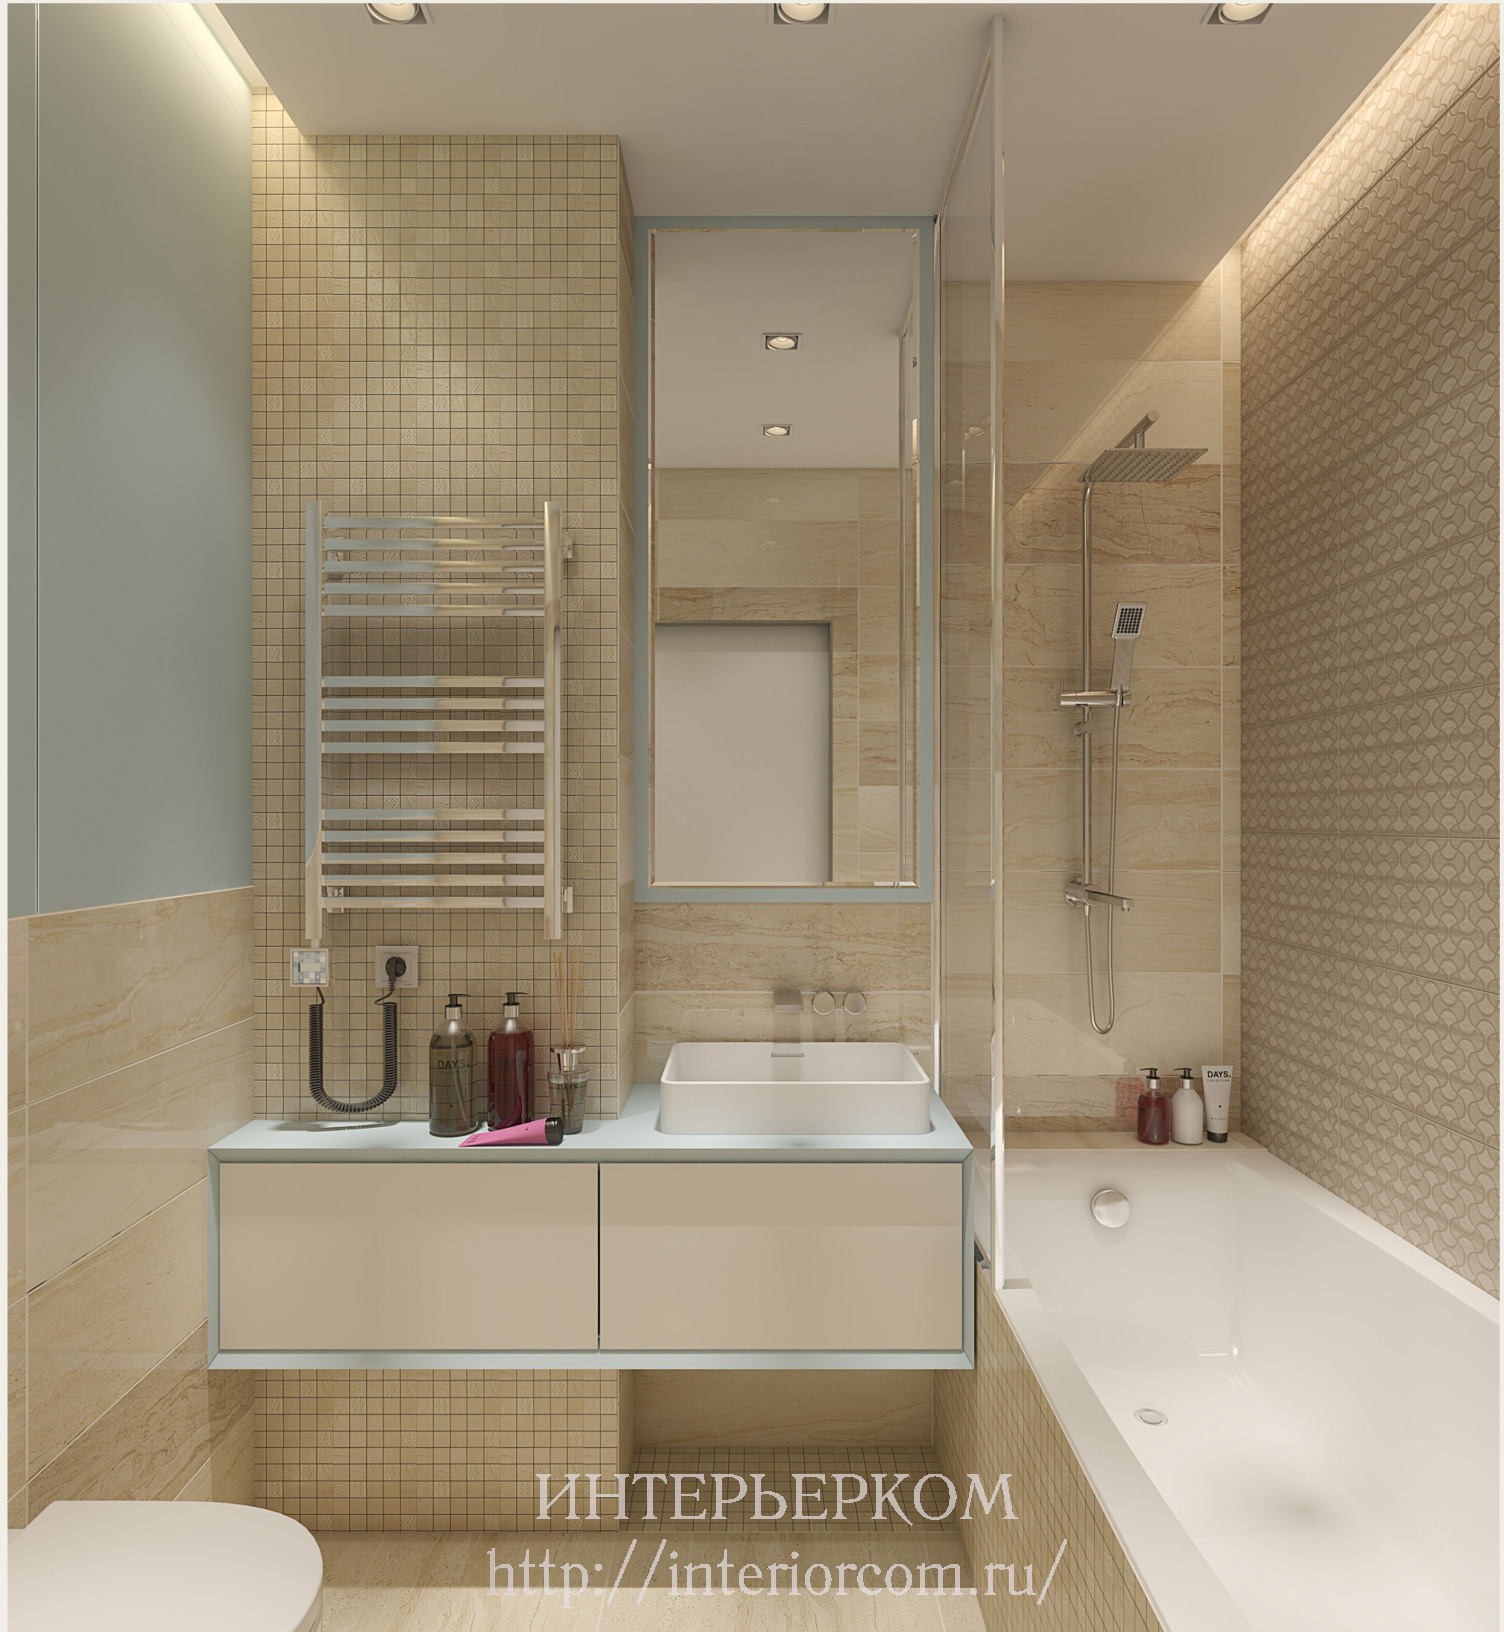 Kombinirana unutrašnjost kupaonice: 5 glavnih značajki za hladan dizajn